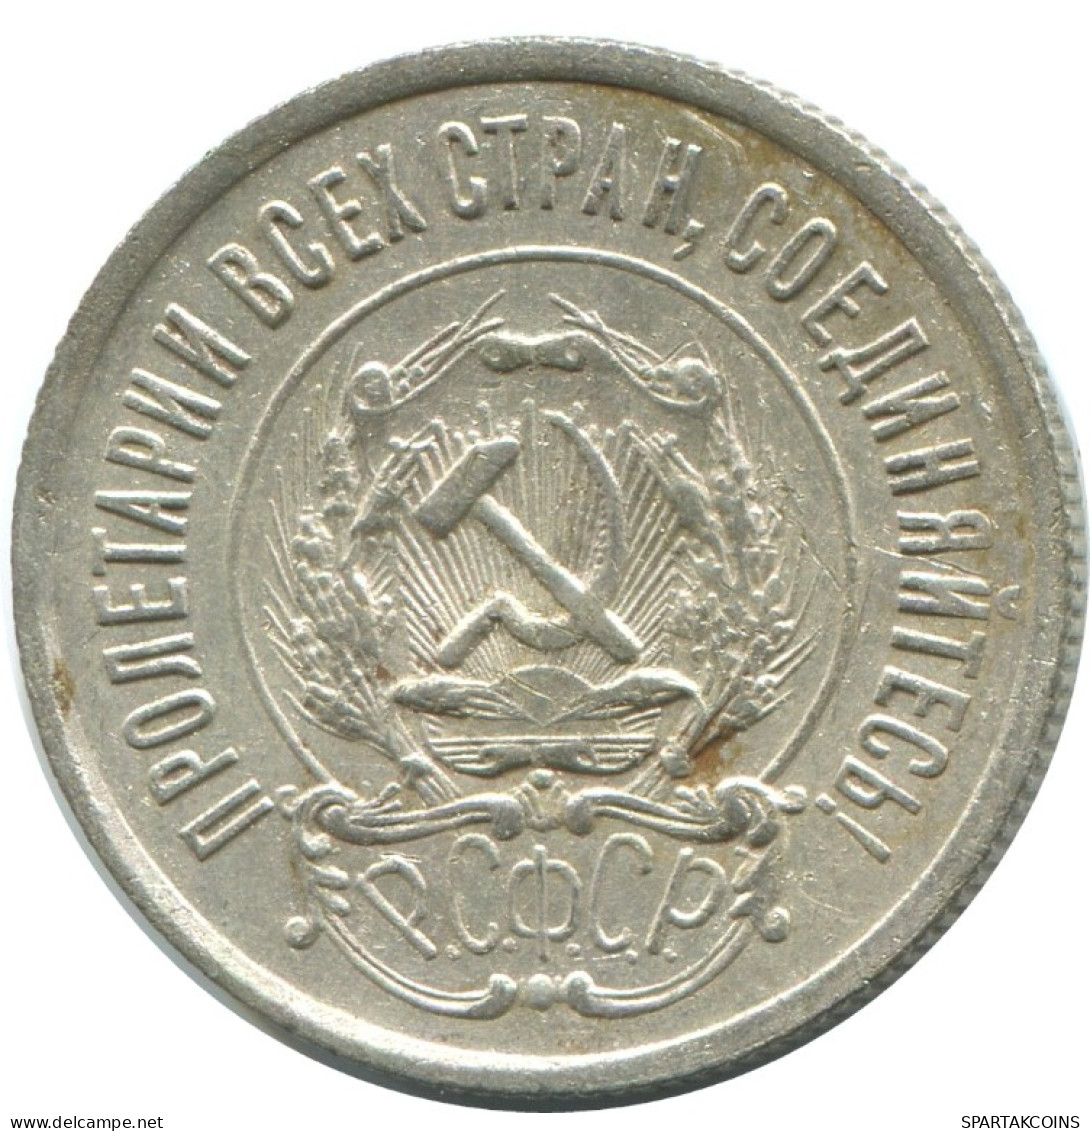 20 KOPEKS 1923 RUSSIA RSFSR SILVER Coin HIGH GRADE #AF542.4.U.A - Russland